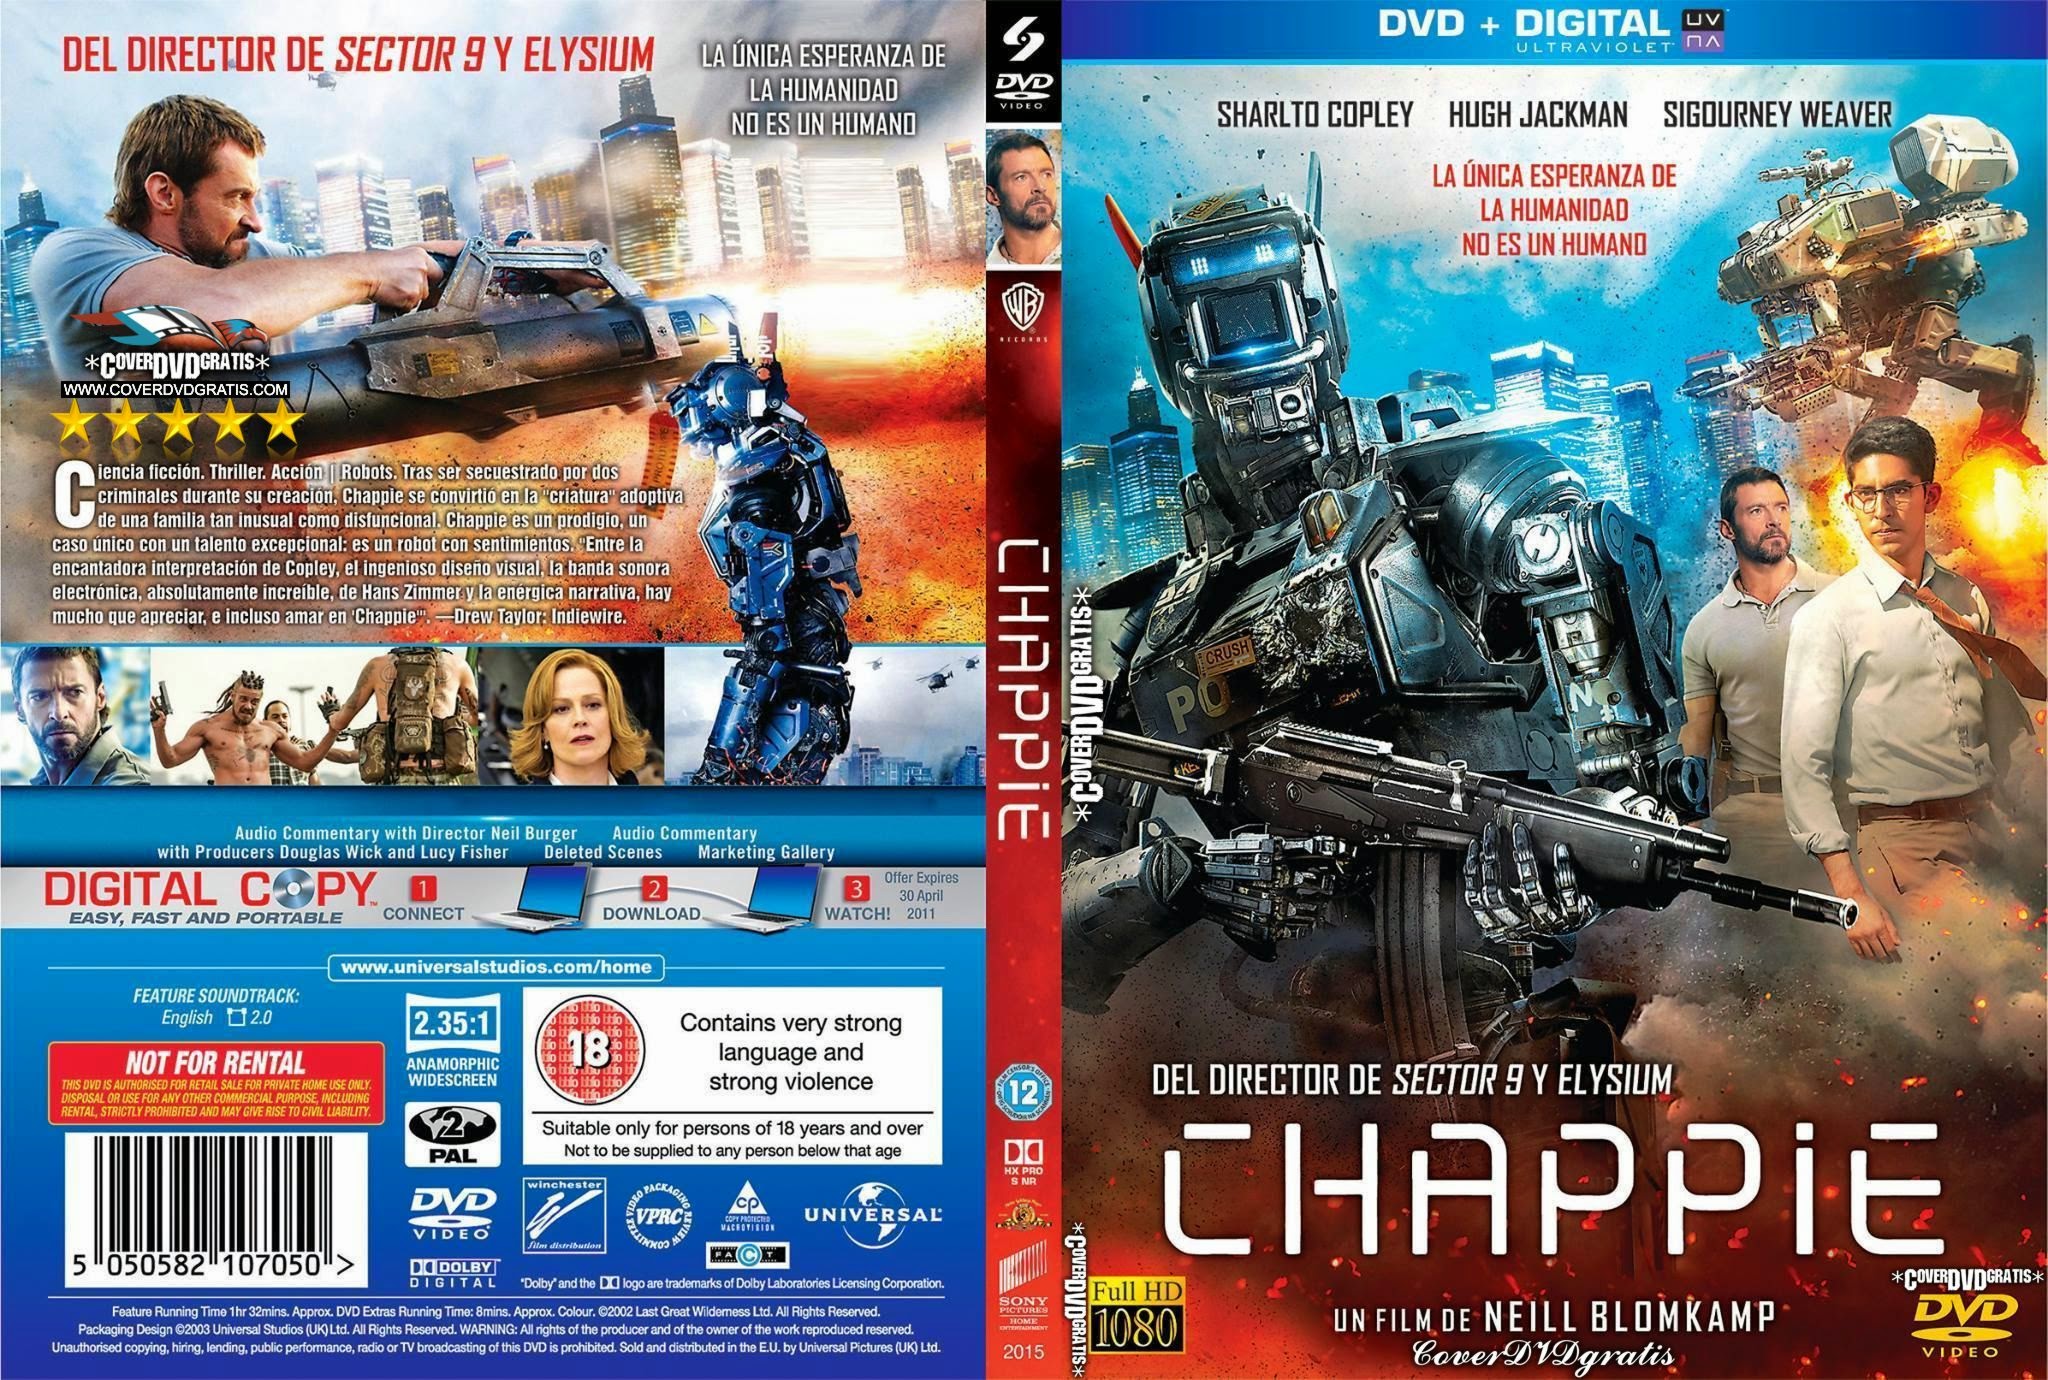 Chappie 2015 DVD COVER - CoverDVDgratis